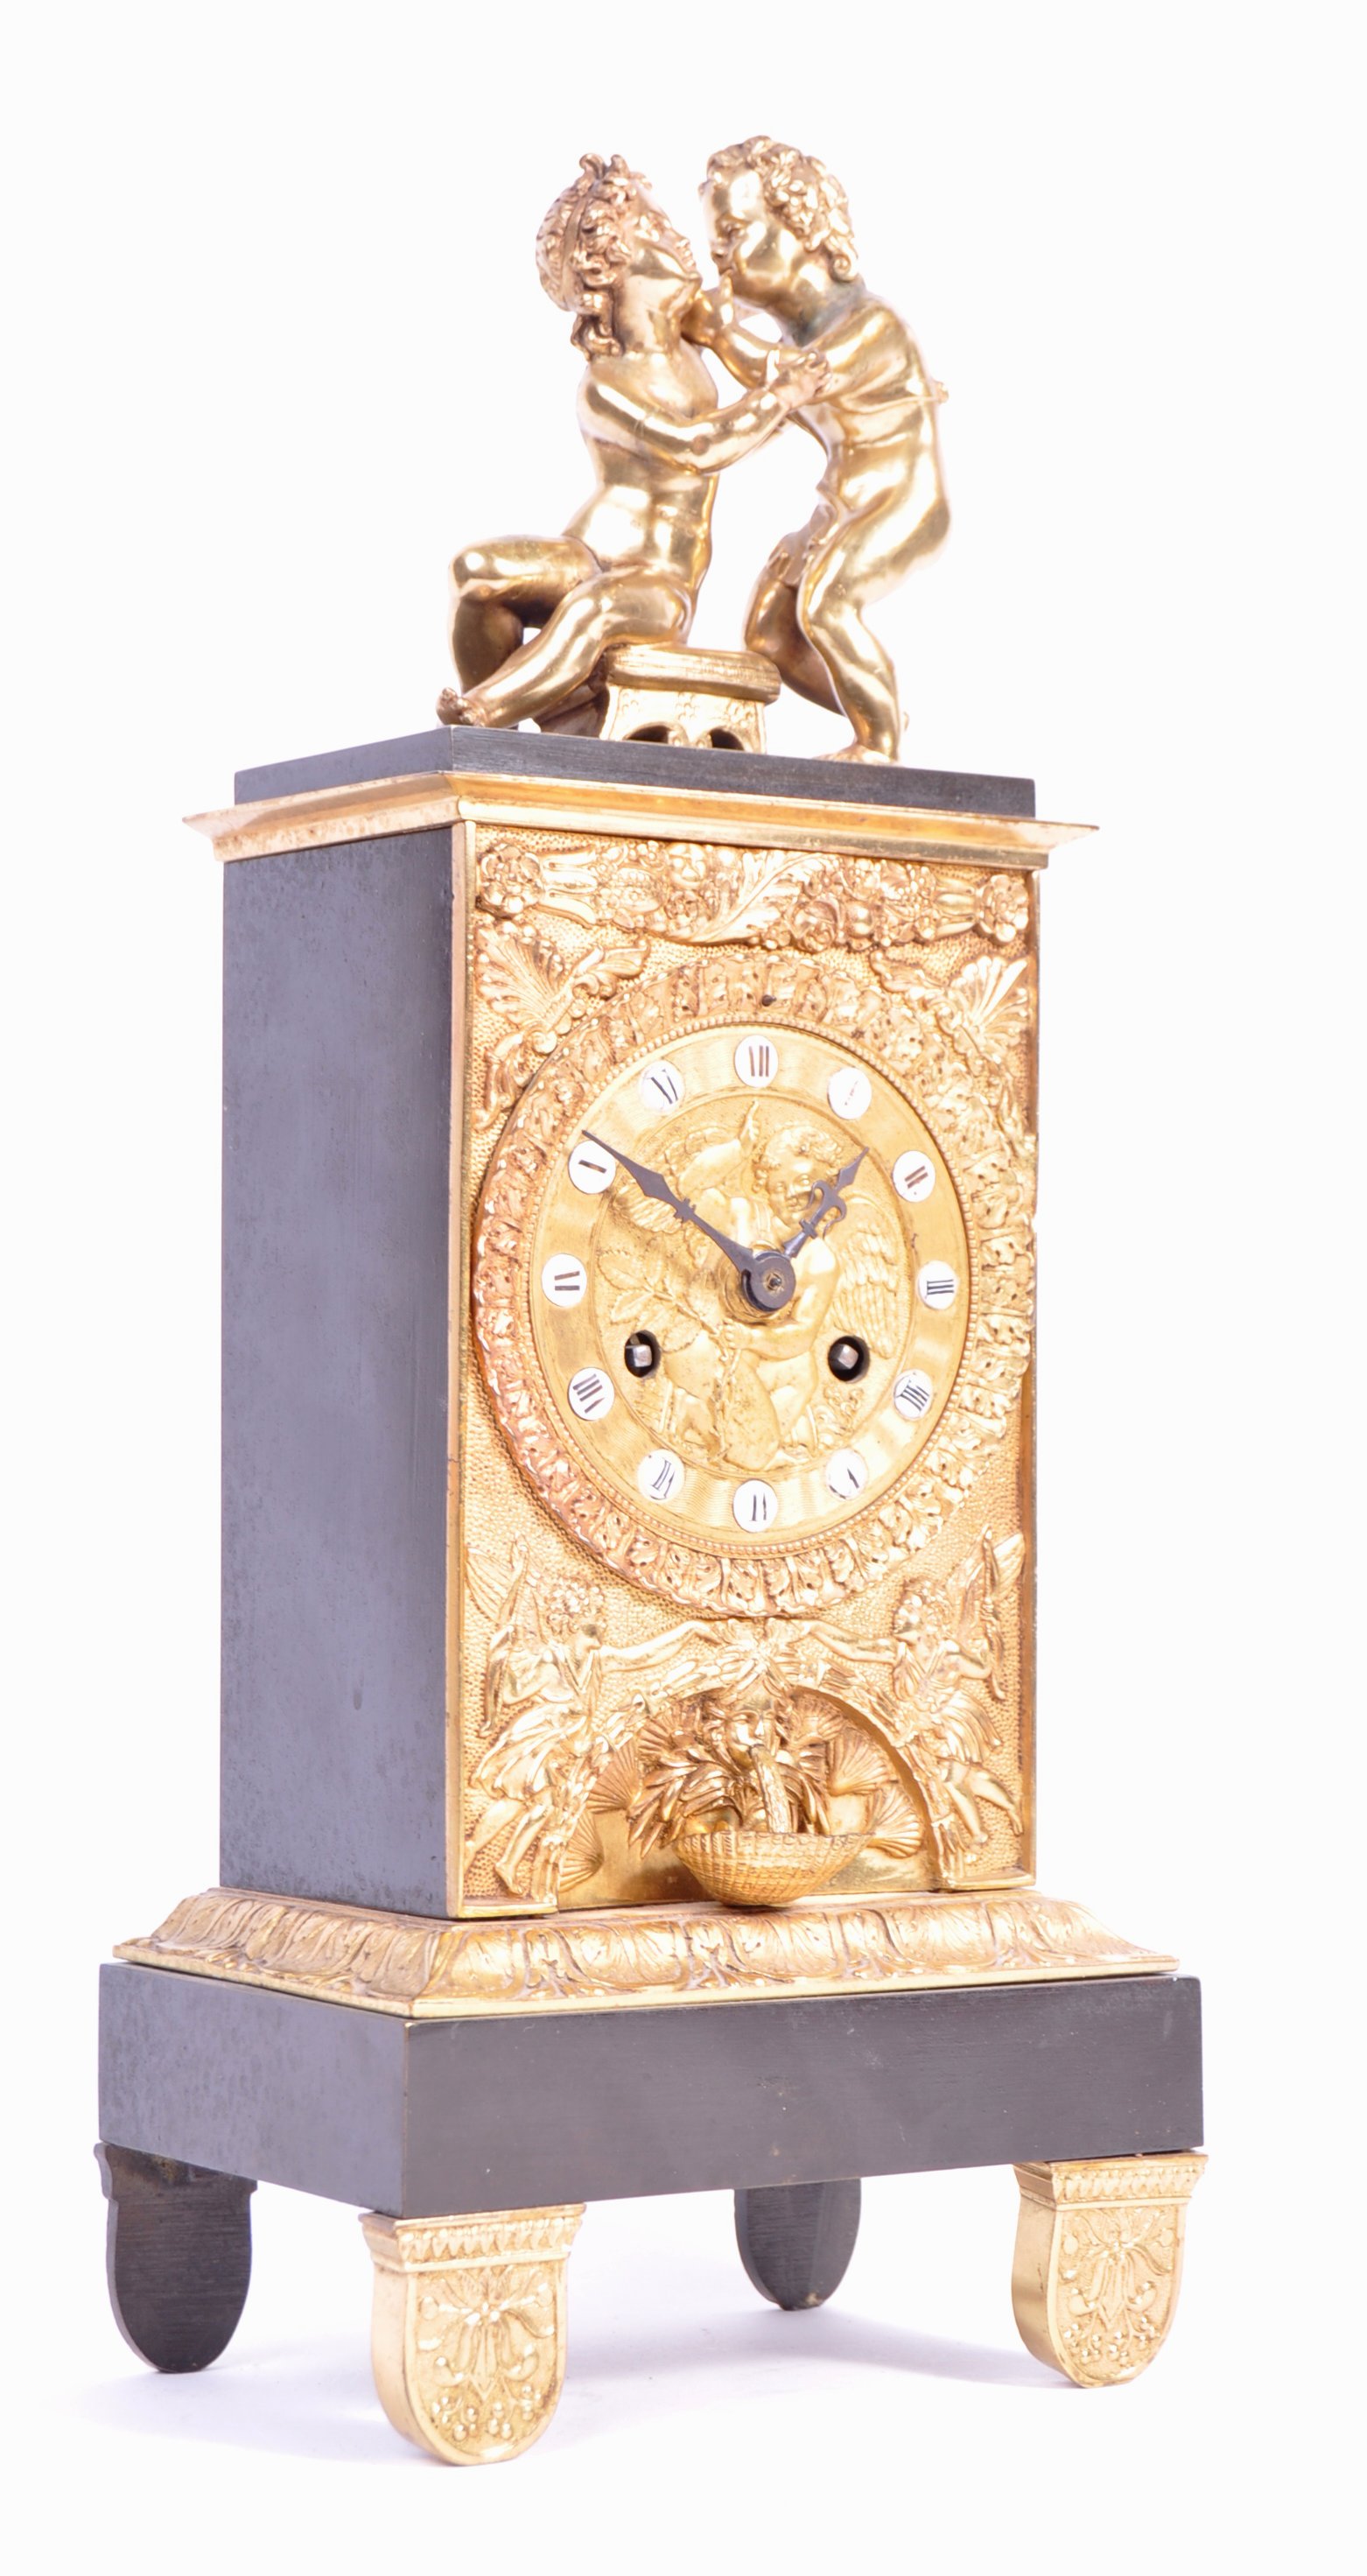 19TH CENTURY FRENCH ORMOLU CHERUB CLOCK WITH FONTA